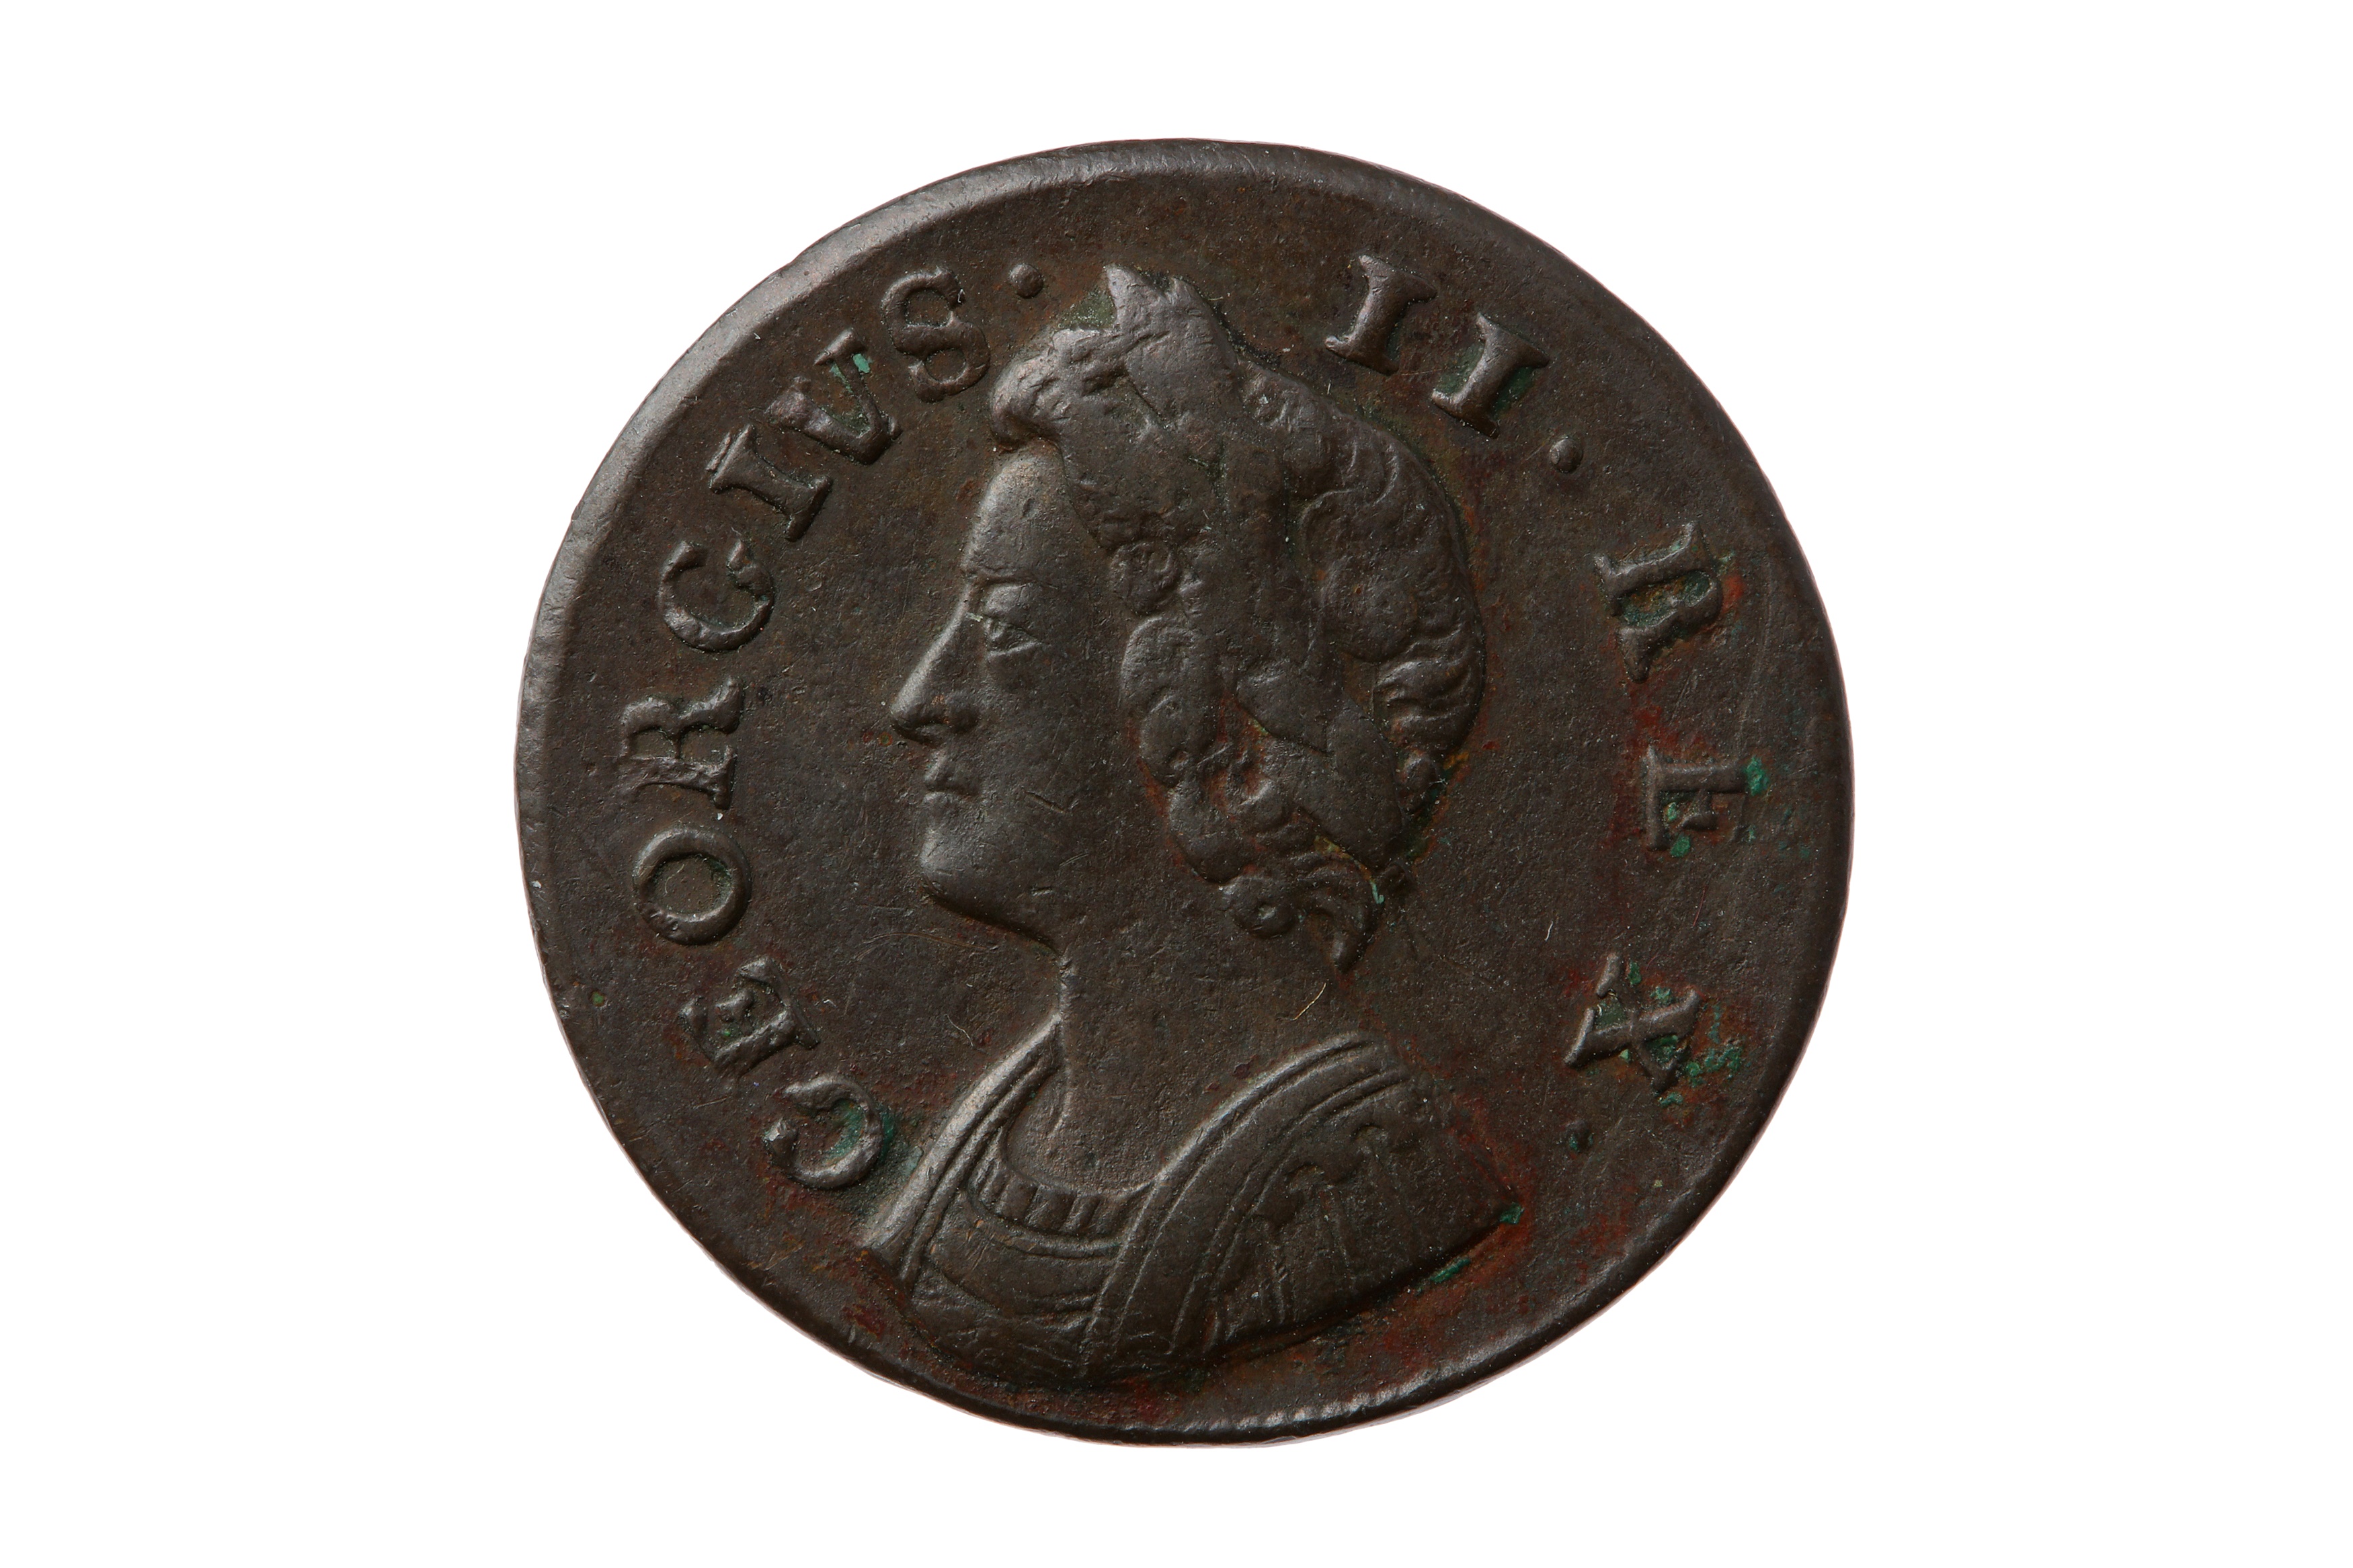 GEORGE II (1727 - 1760), 1735 FARTHING.